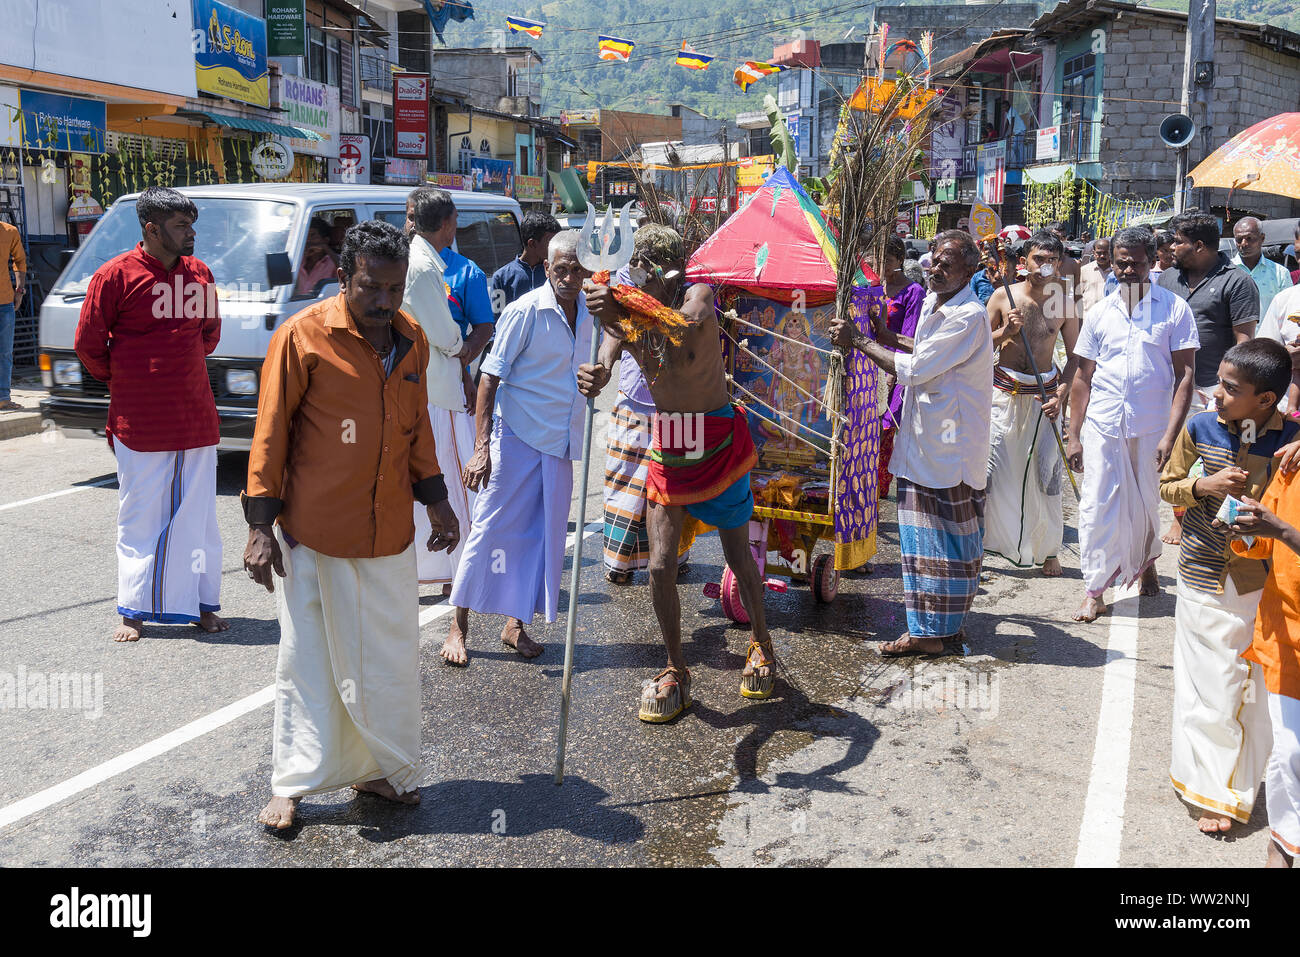 Pusellawa, Sri Lanka, 12. März 2019: Hindu Festival der Thaipusam - Body Piercing Rituale unter dem Blut Mond. Anhänger ziehen Warenkorb durch Haken in der Haut. Stockfoto